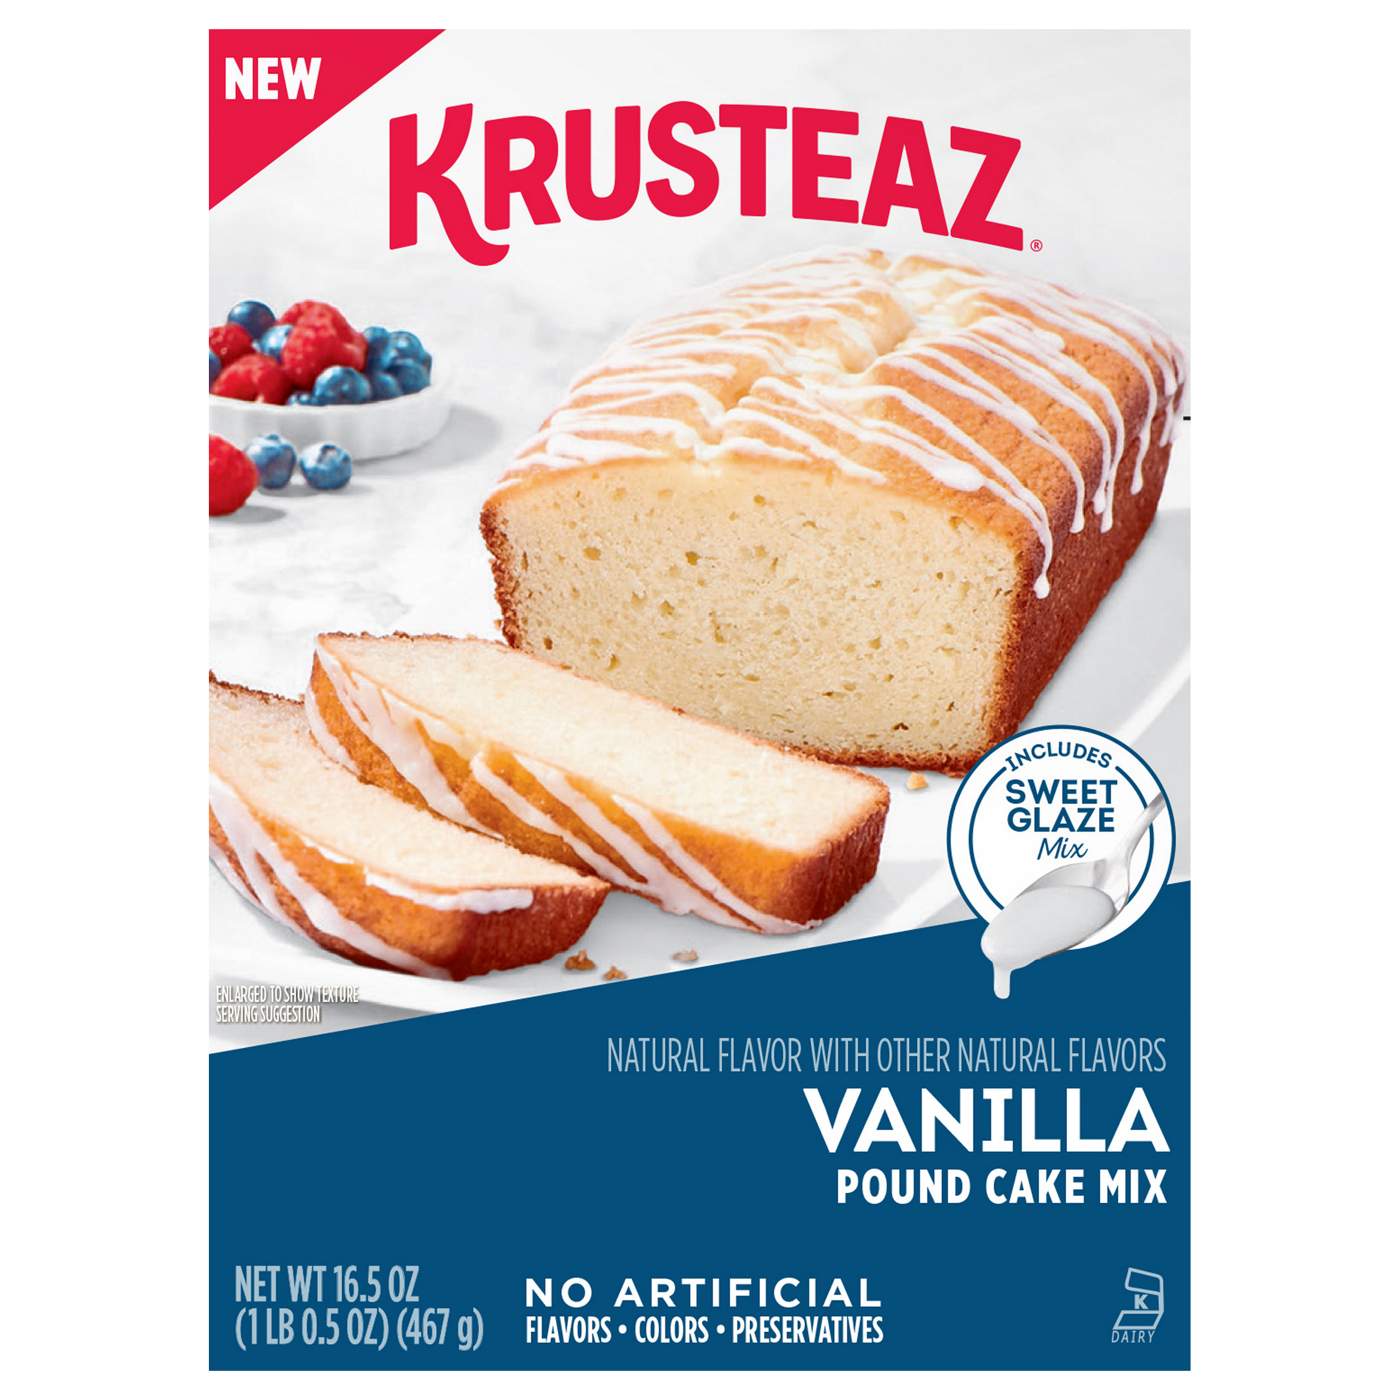 Krusteaz Vanilla Pound Cake Mix; image 1 of 6